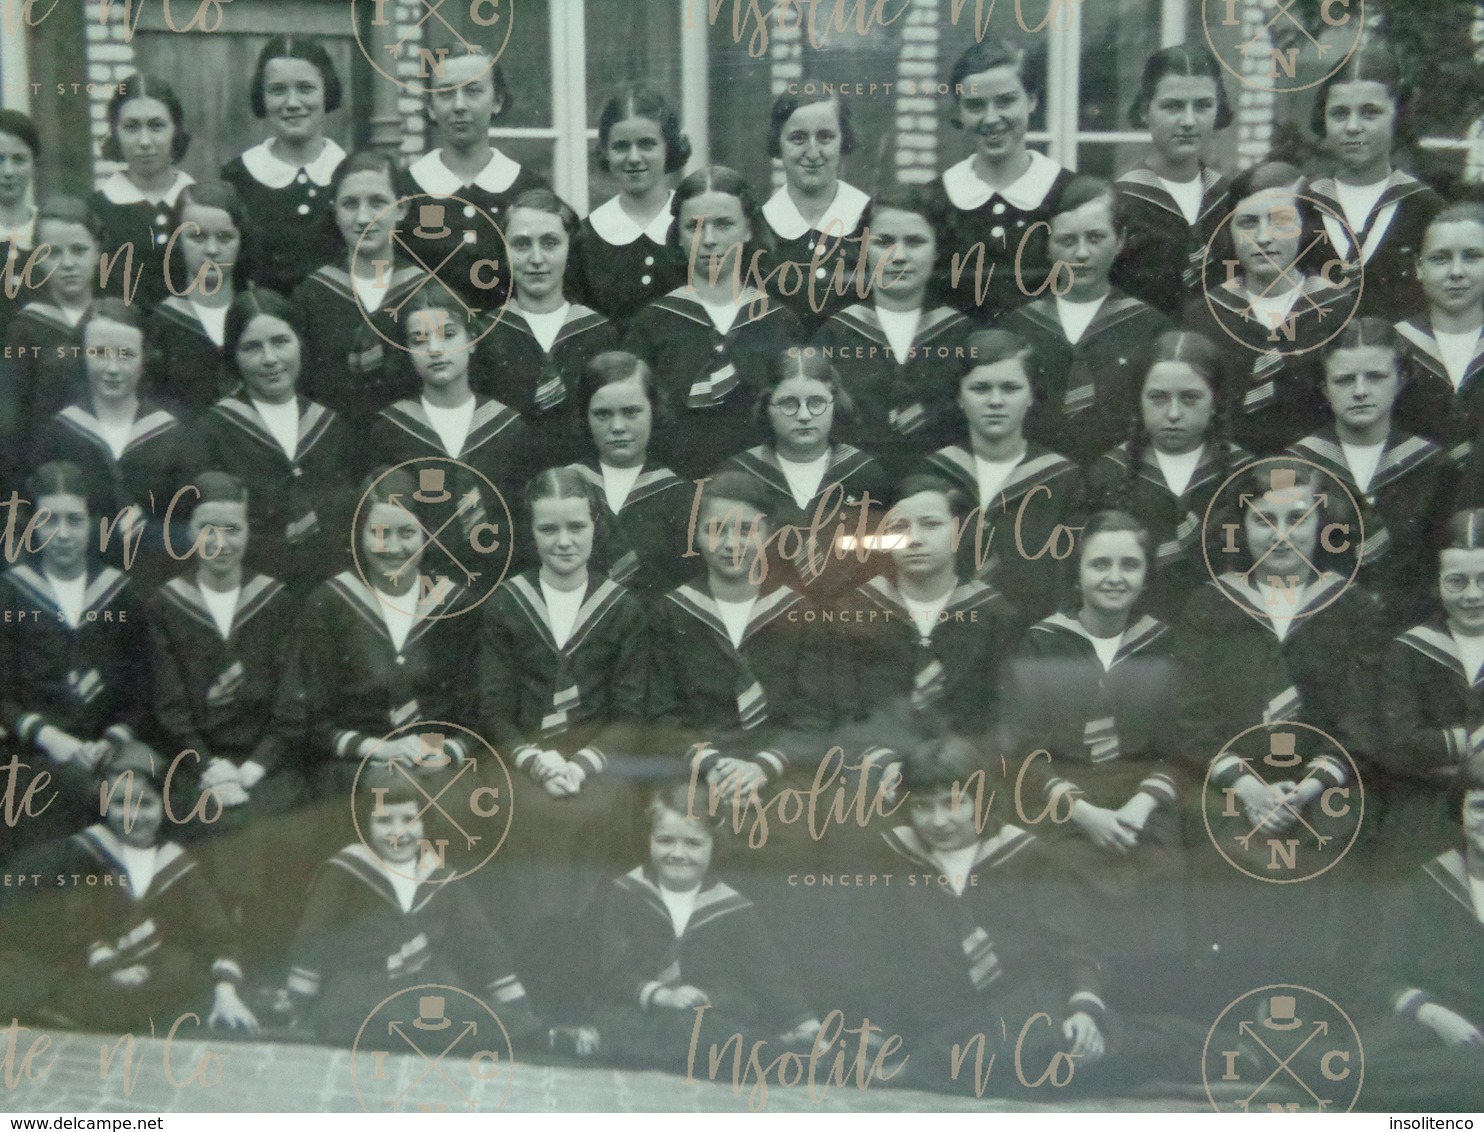 Photographie argentique panoramique N/B encadrée sous verre - élèves de l'école des Soeurs de Champion Namur 1935-1936